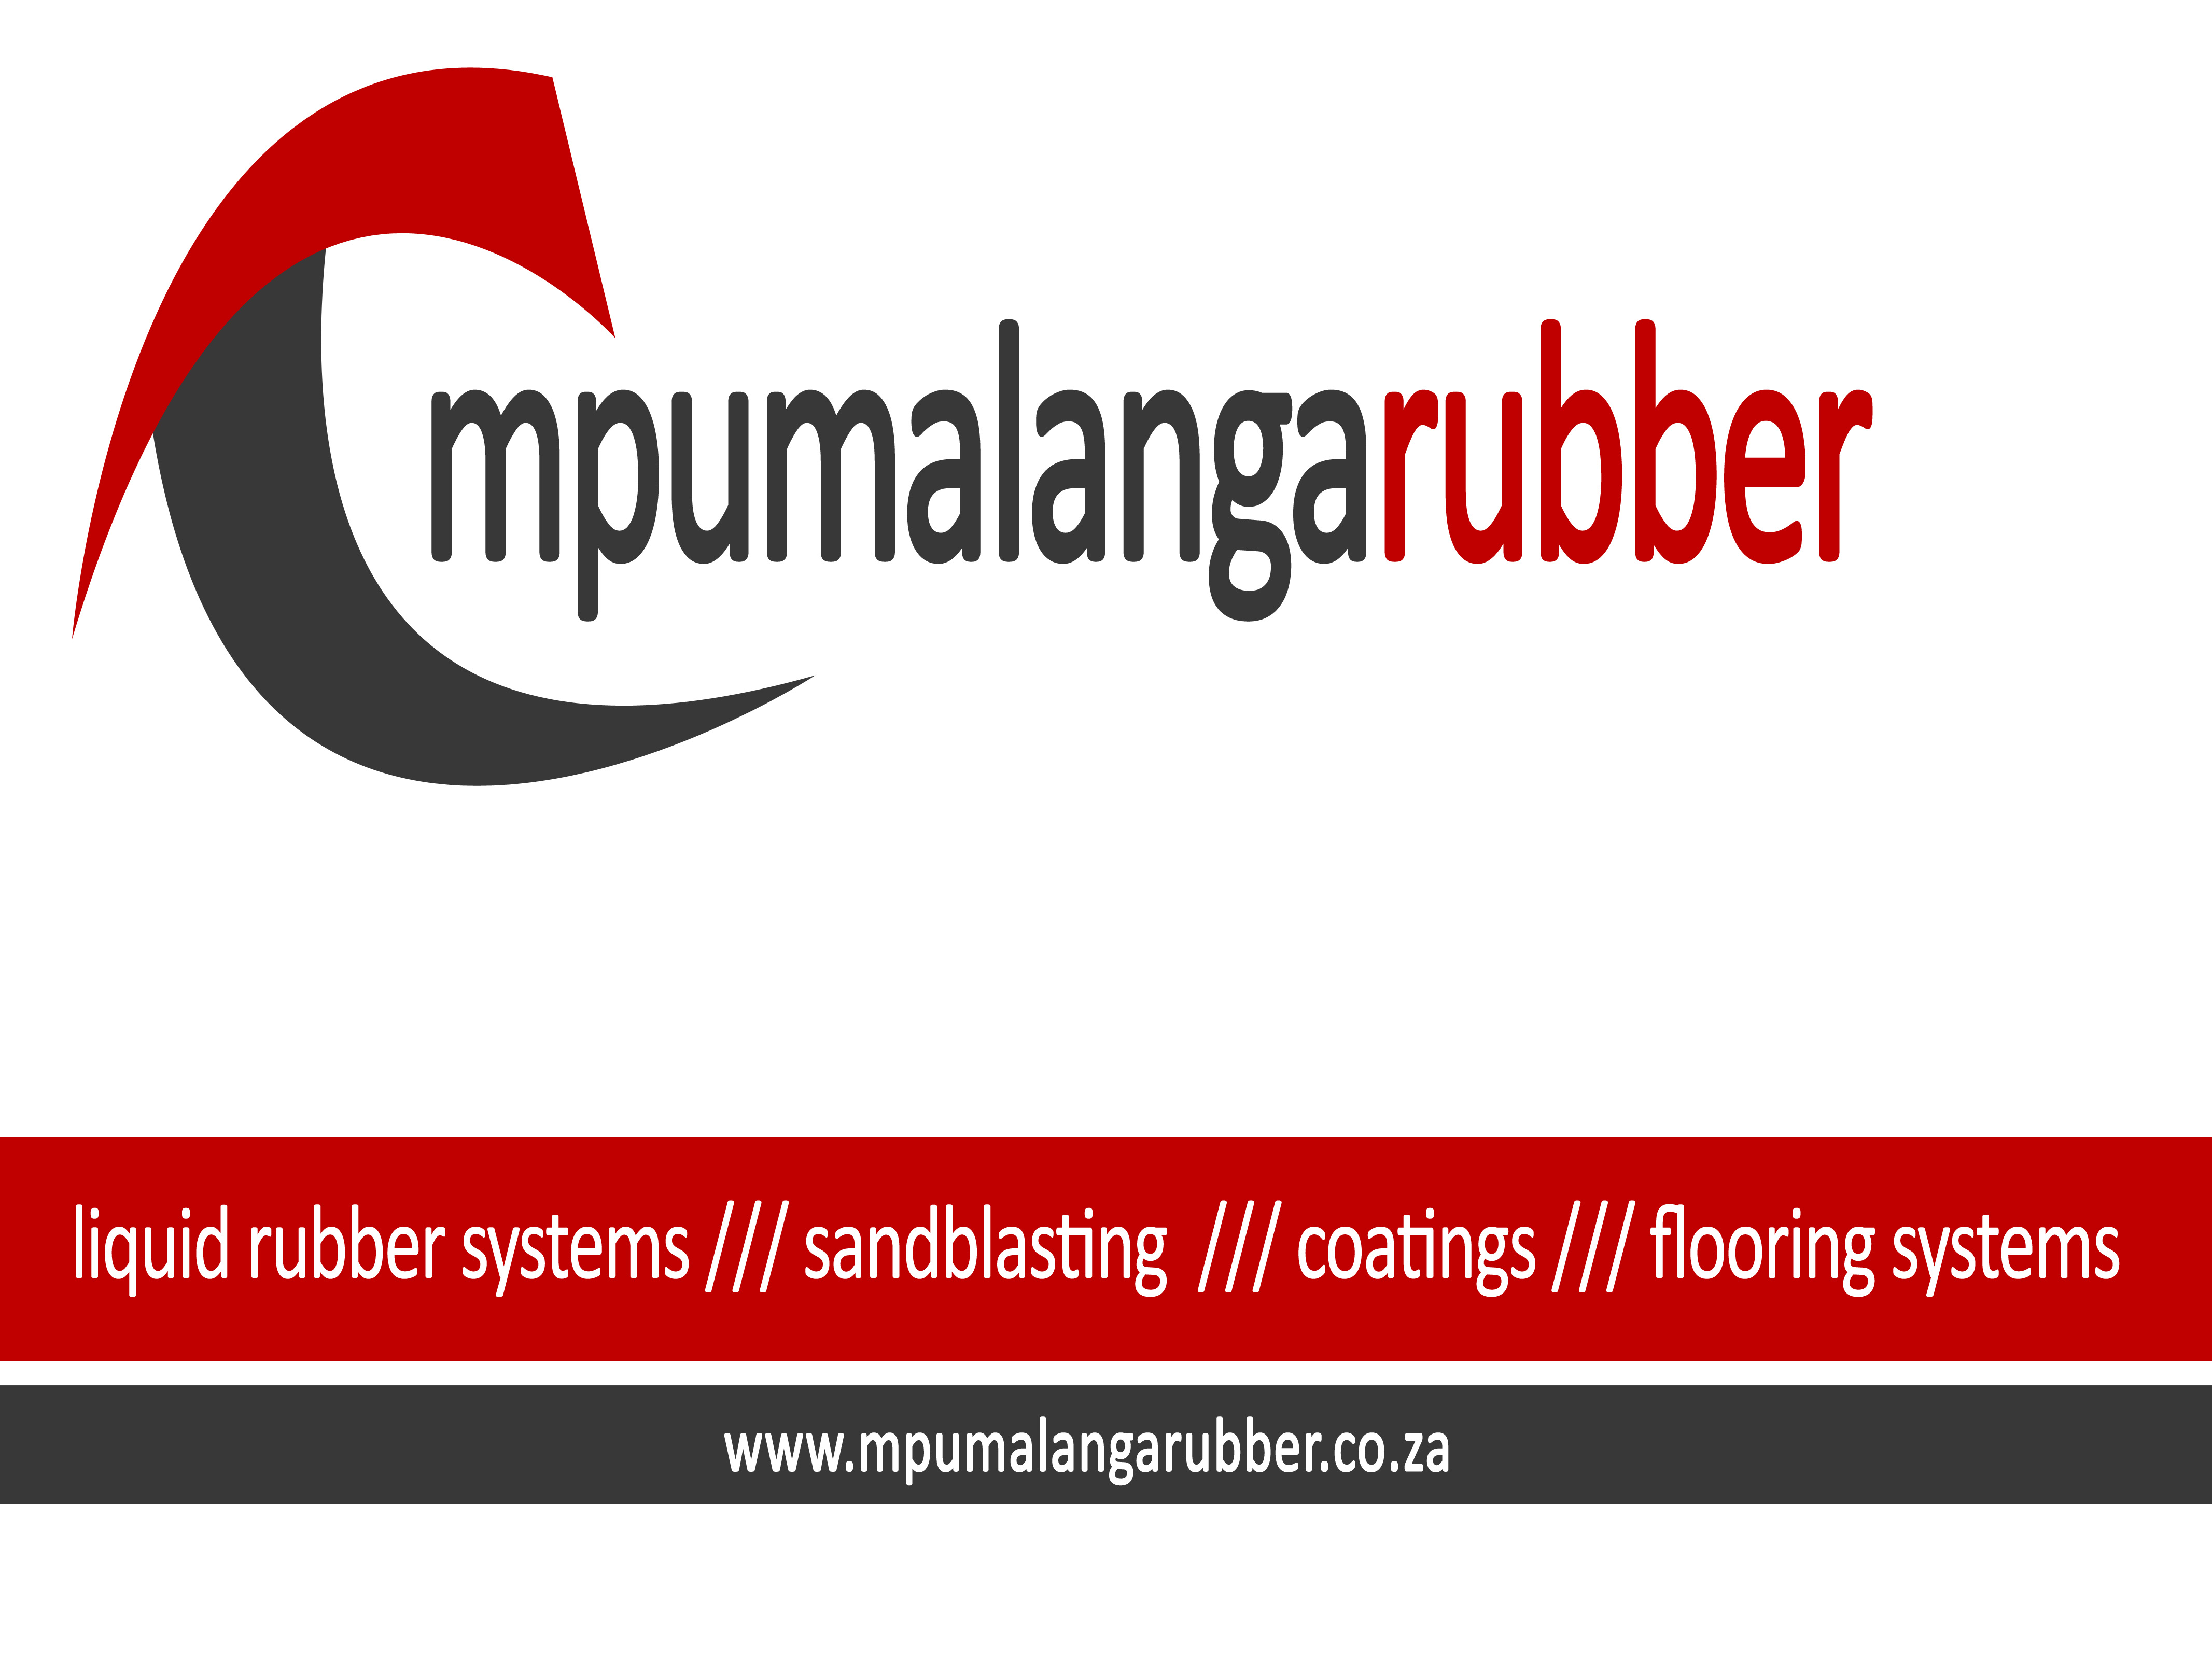 Mpumalanga Rubber (Unverified) logo